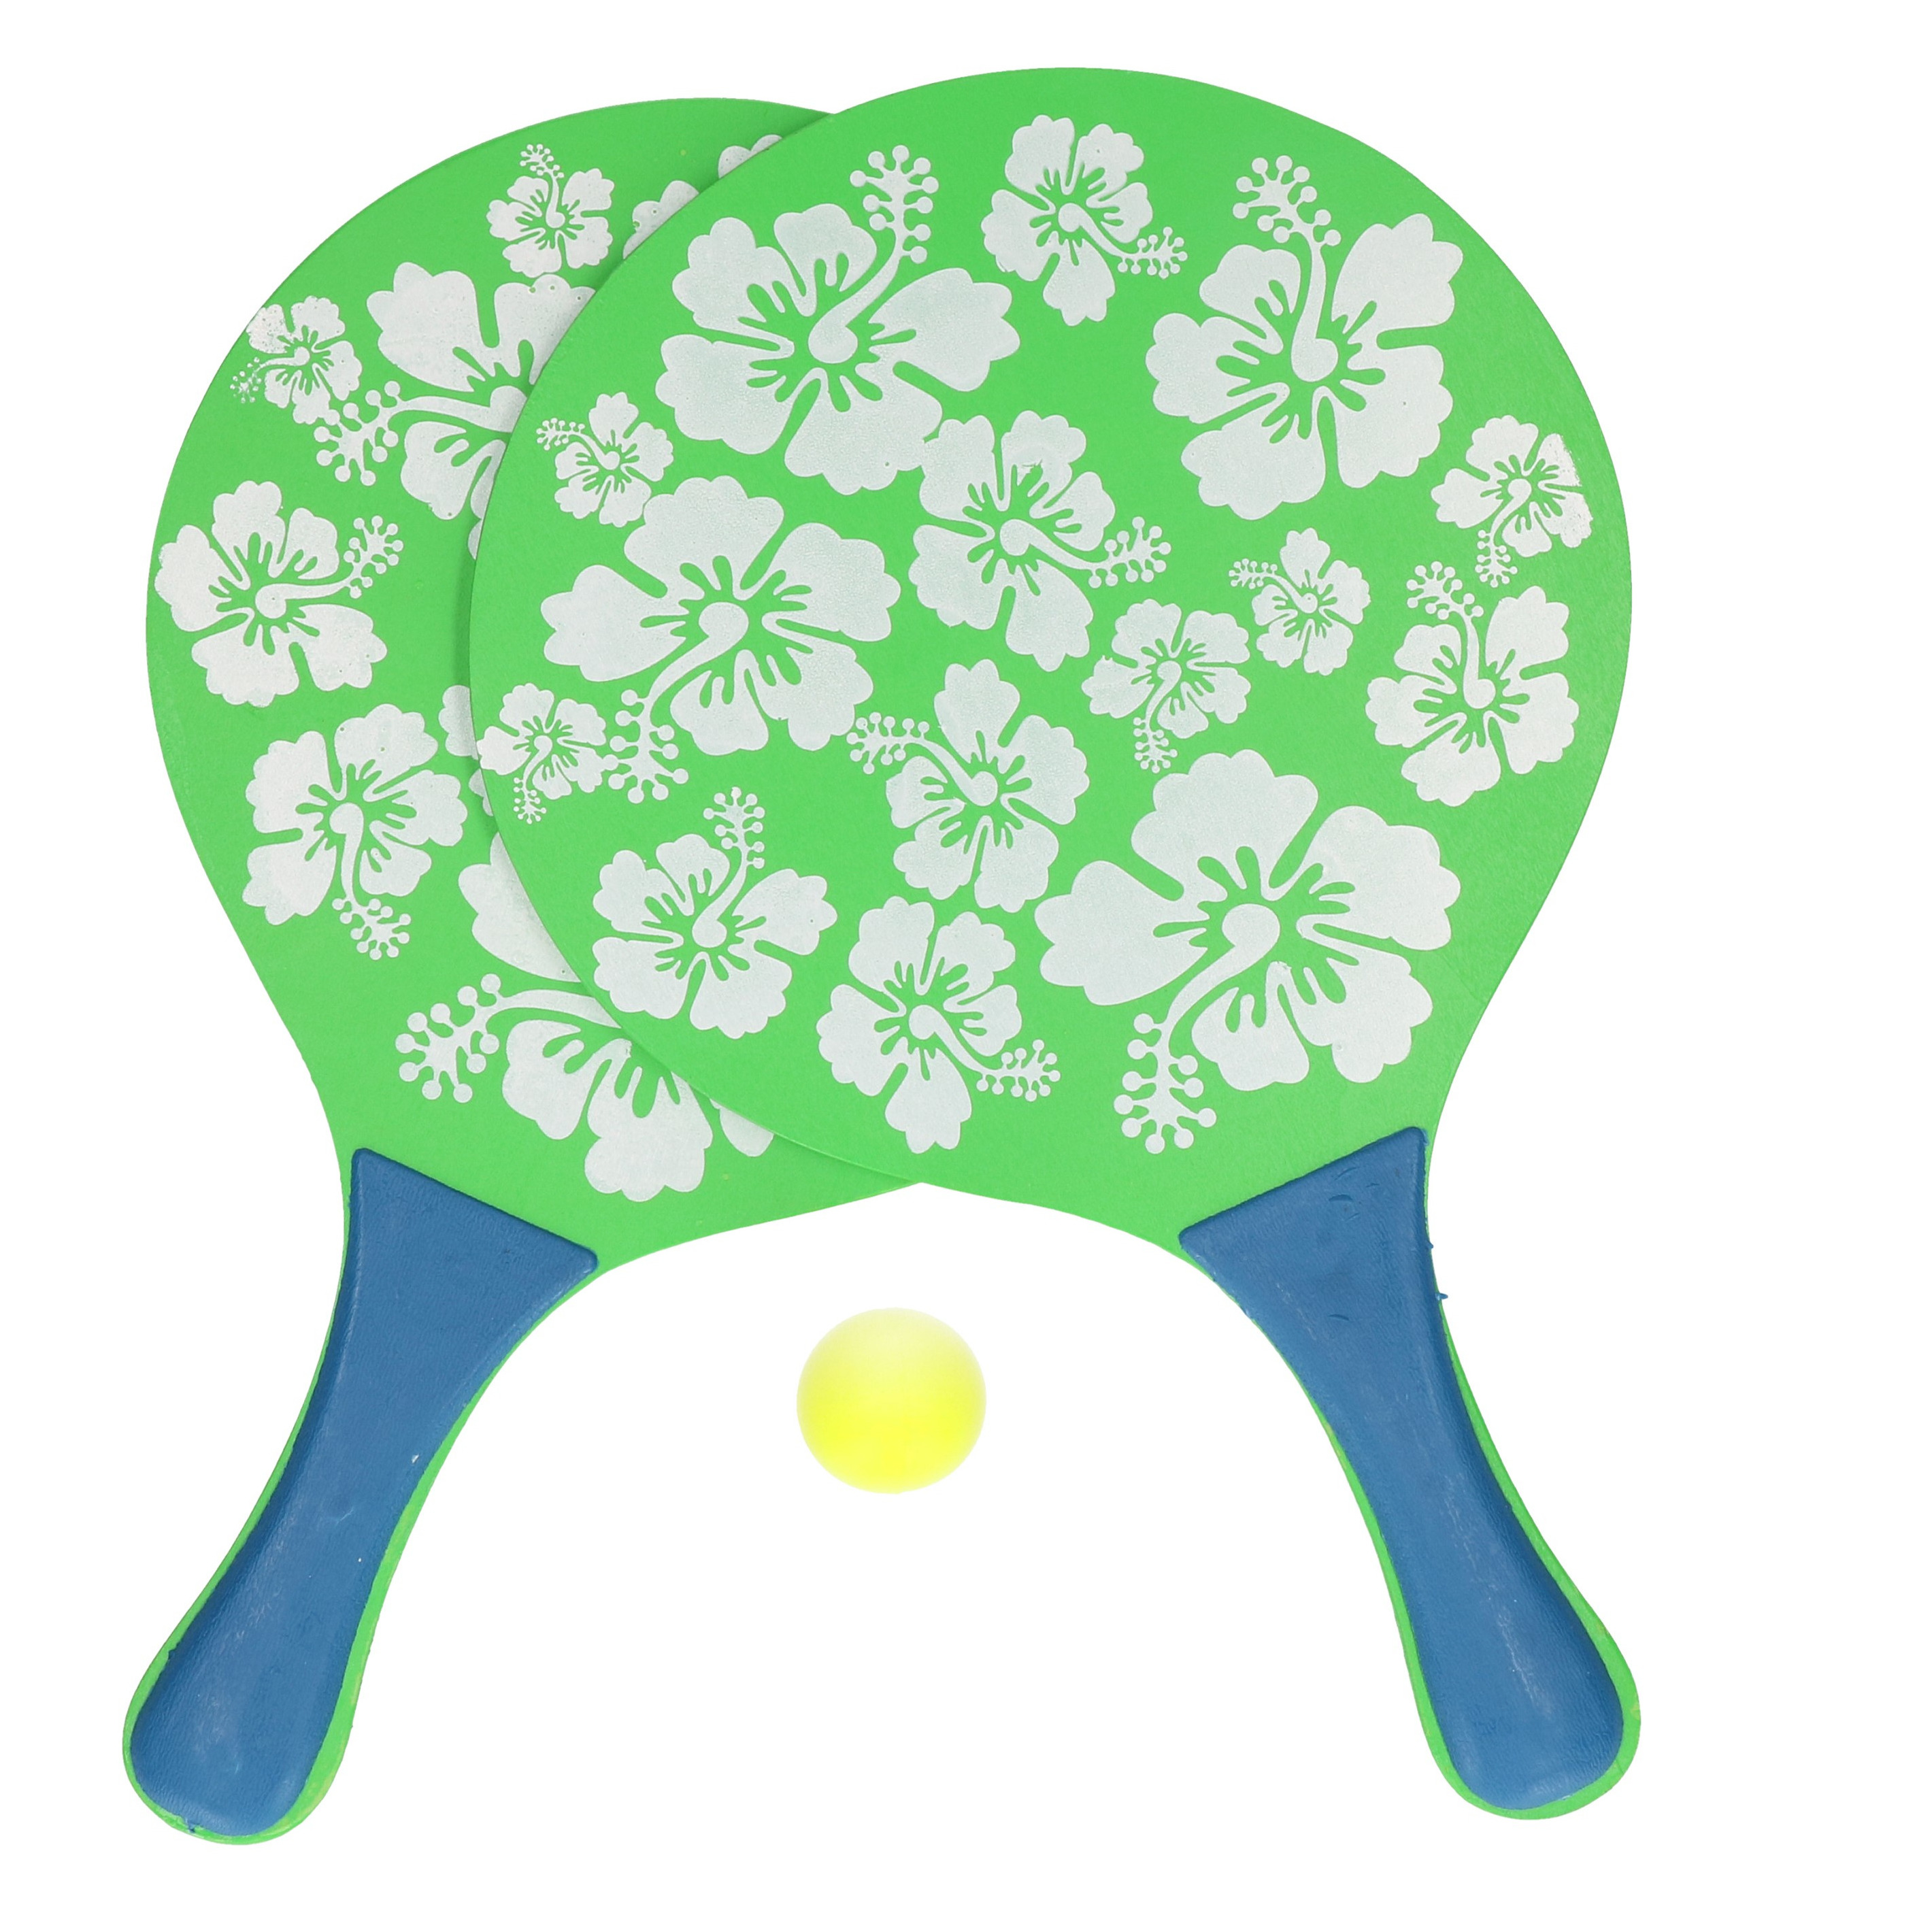 Groene beachball set met bloemenprint buitenspeelgoed